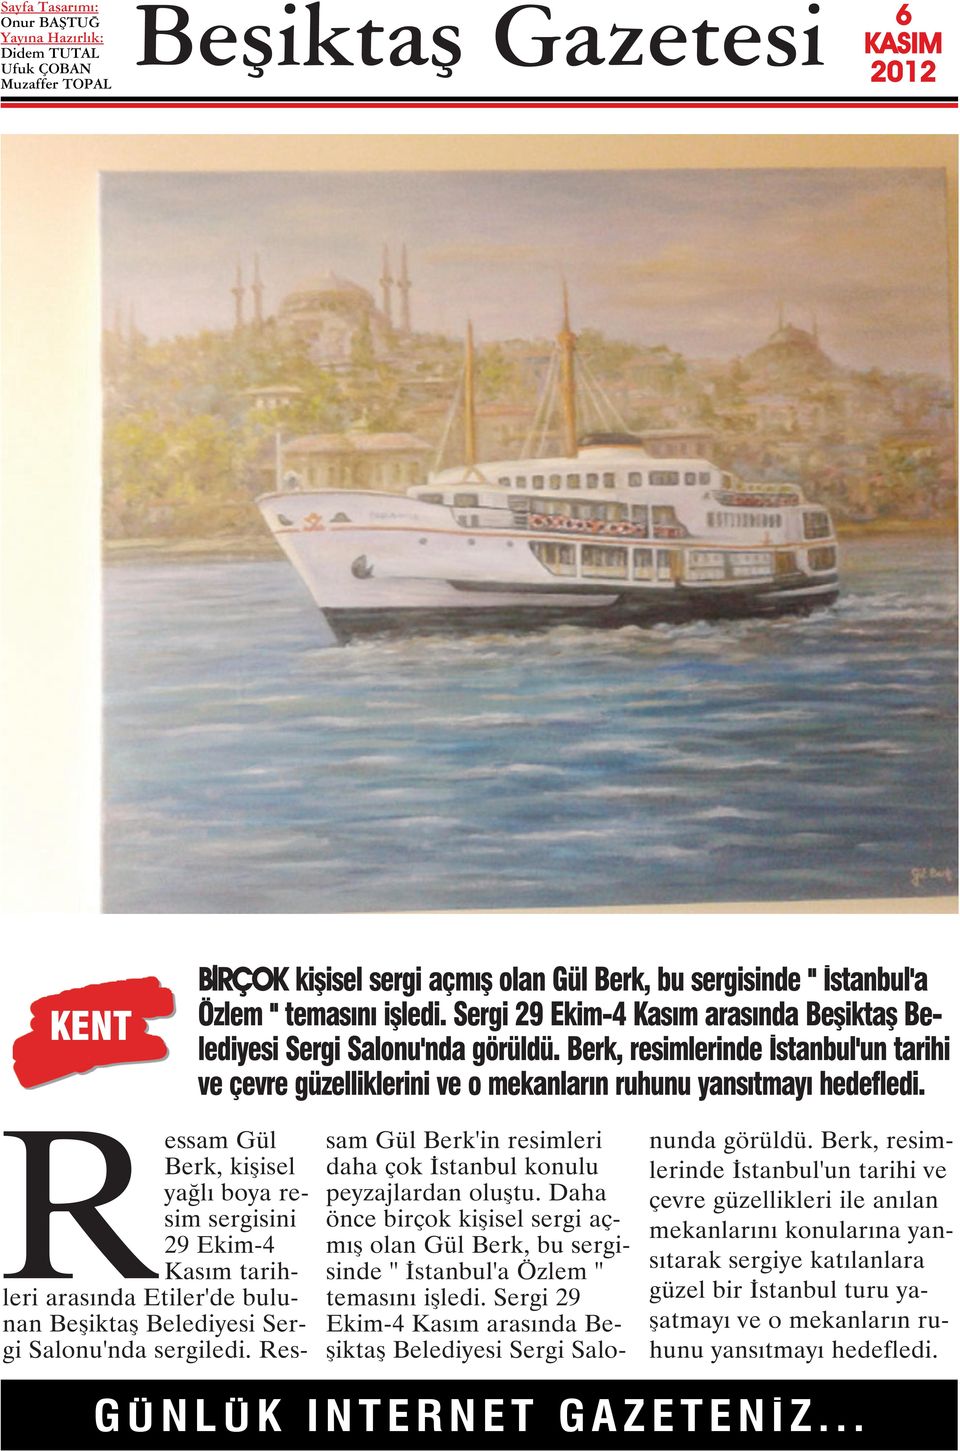 Ressam Gül Berk, kişisel yağlı boya resim sergisini 29 Ekim-4 Kasım tarihleri arasında Etiler'de bulunan Beşiktaş Belediyesi Sergi Salonu'nda sergiledi.